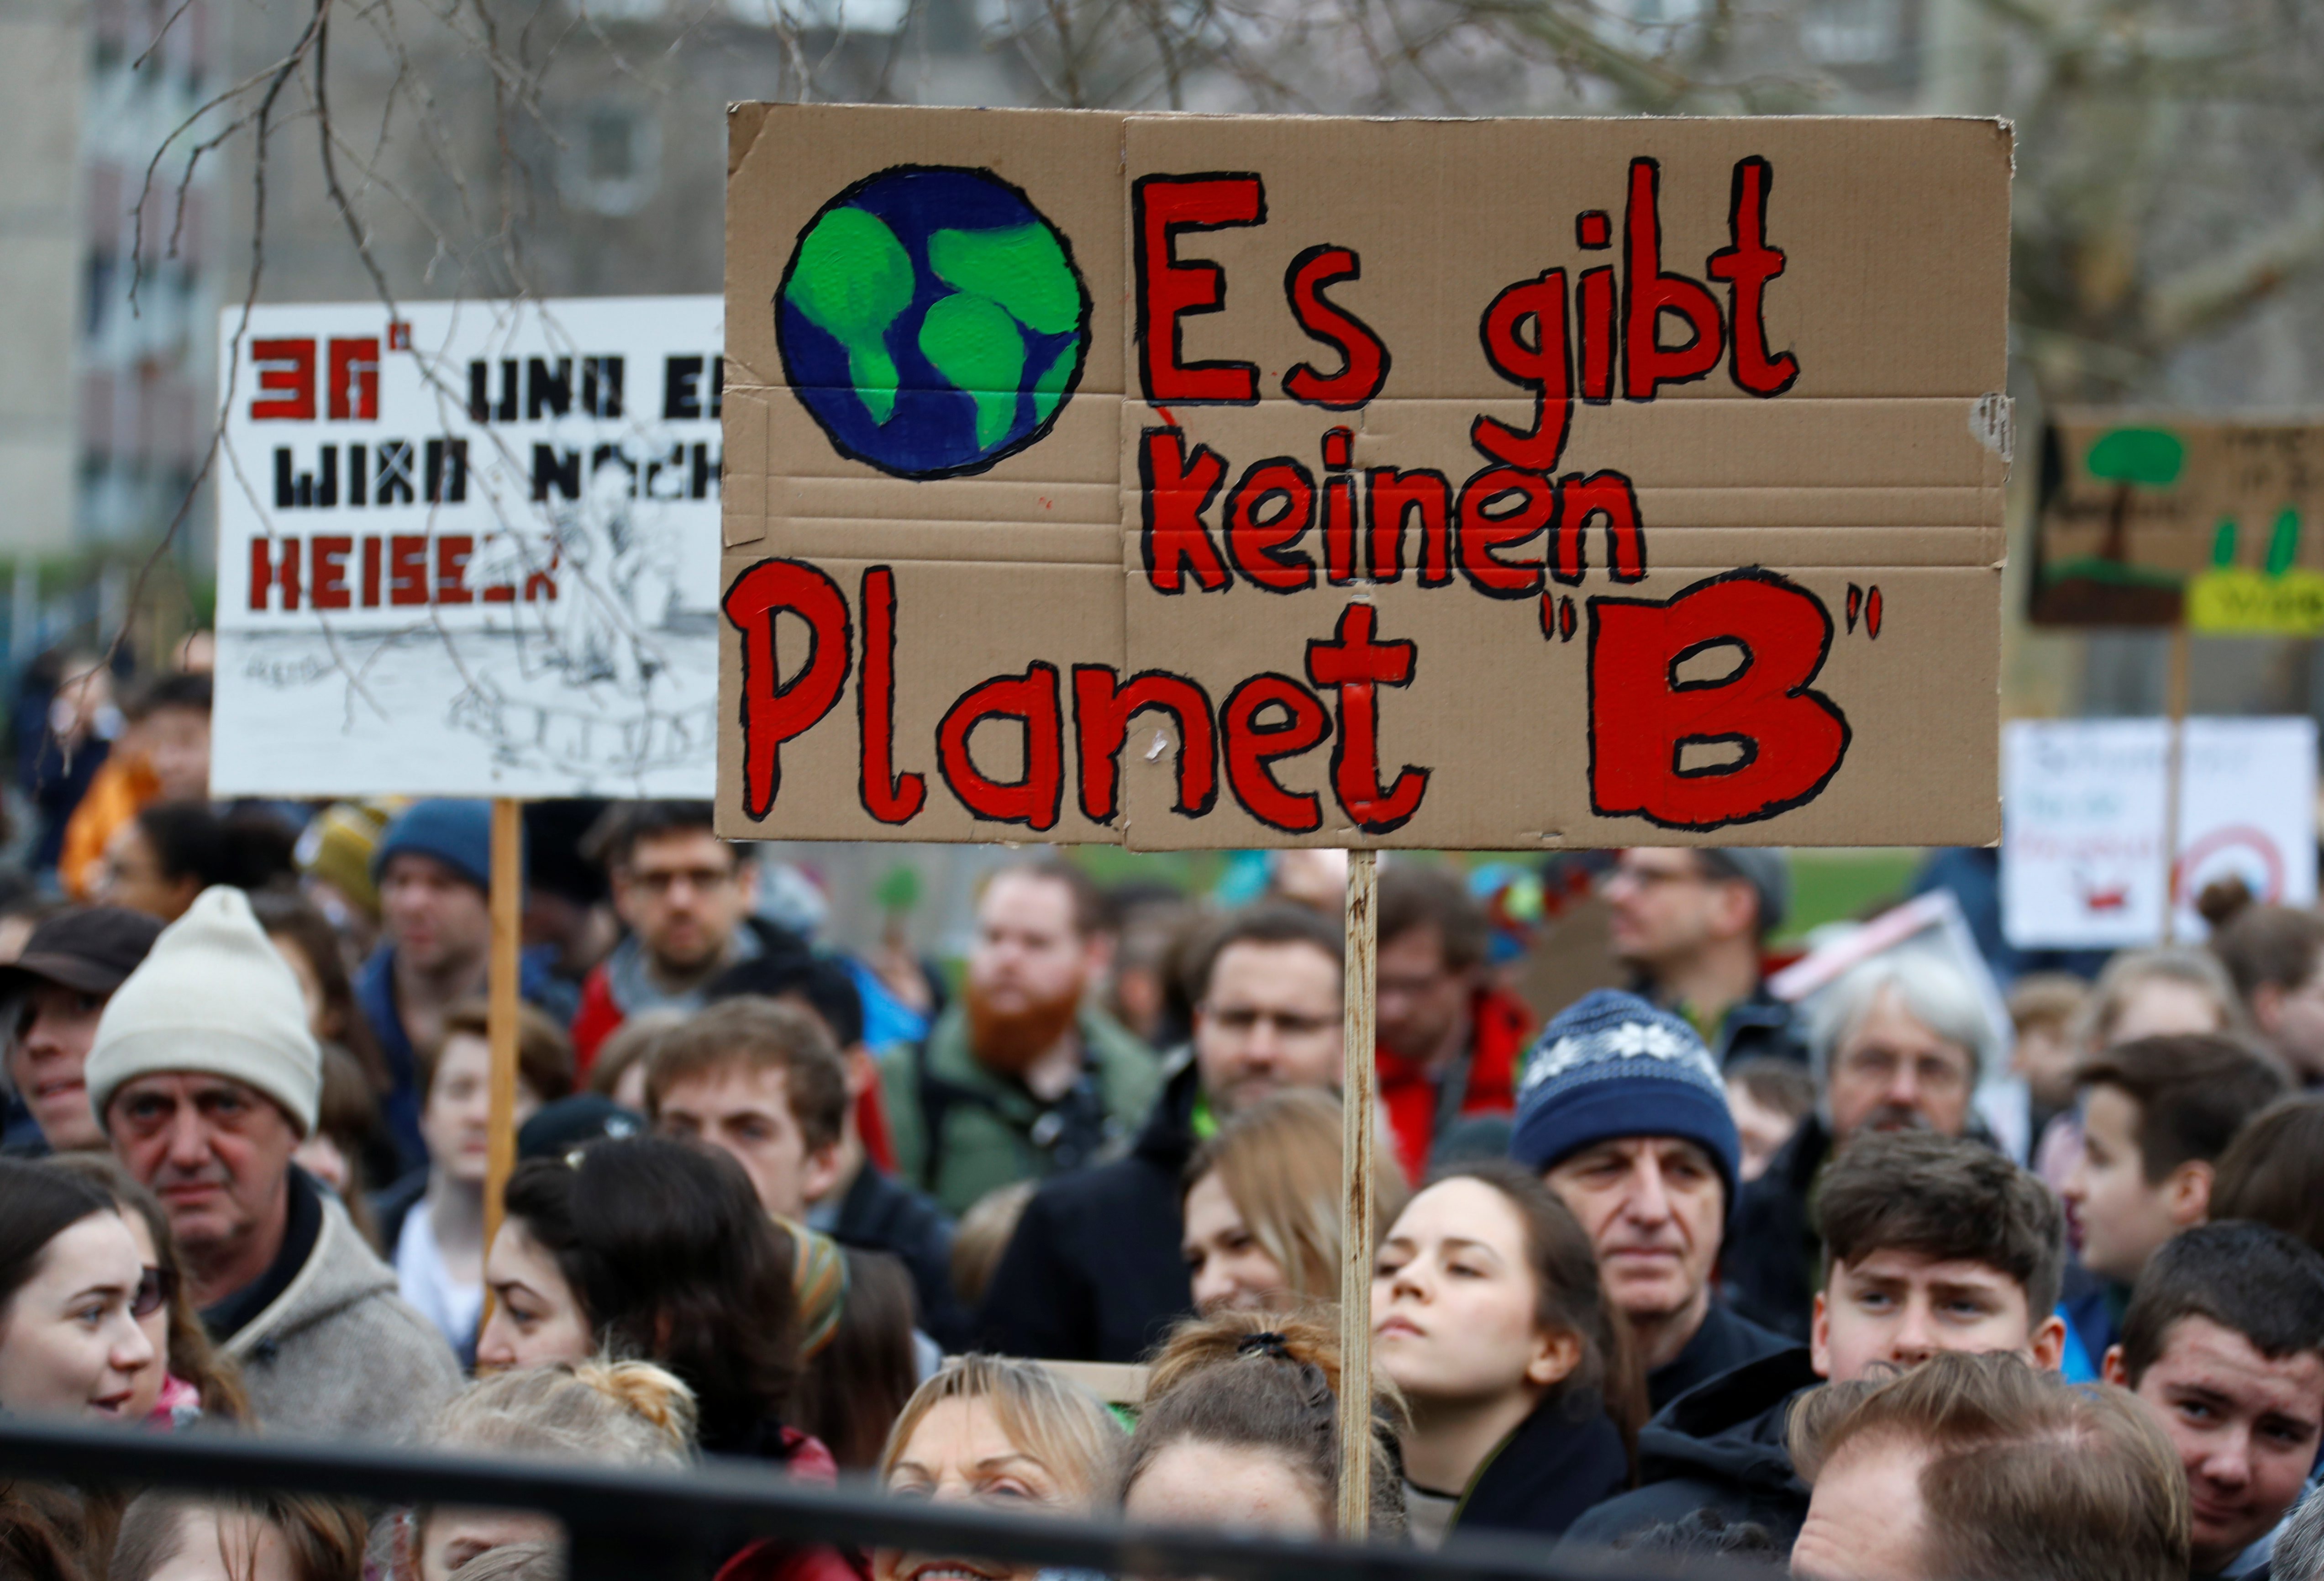 Ein Plakat auf einer Demo mit dem Text "Es gibt keinen Planet B"